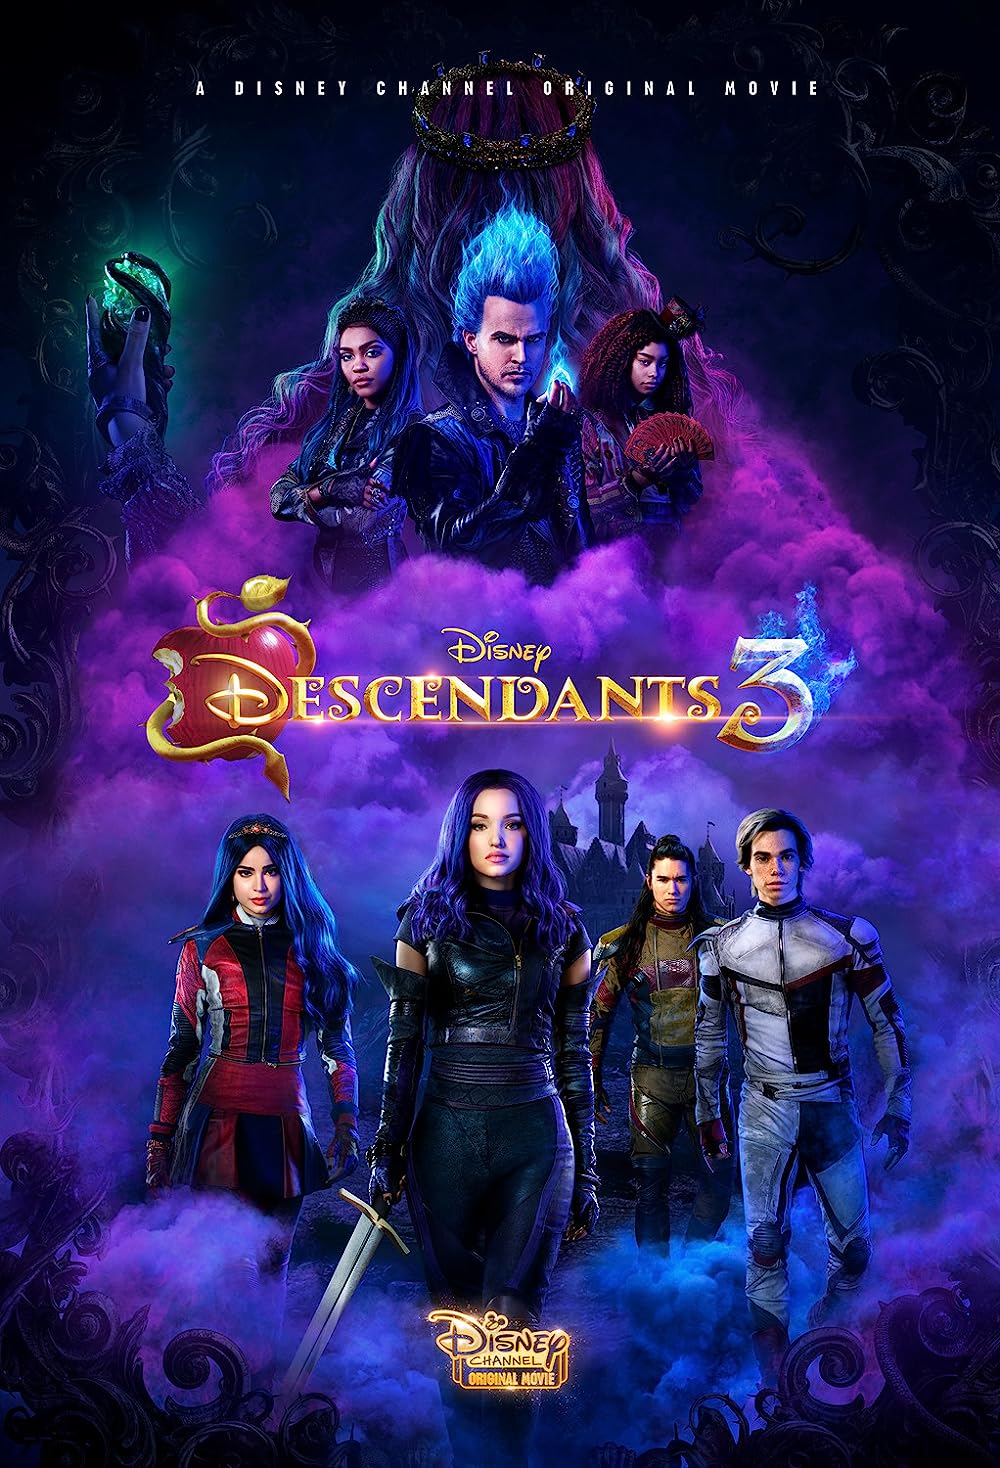 FULL MOVIE: Descendants 3 (2019)